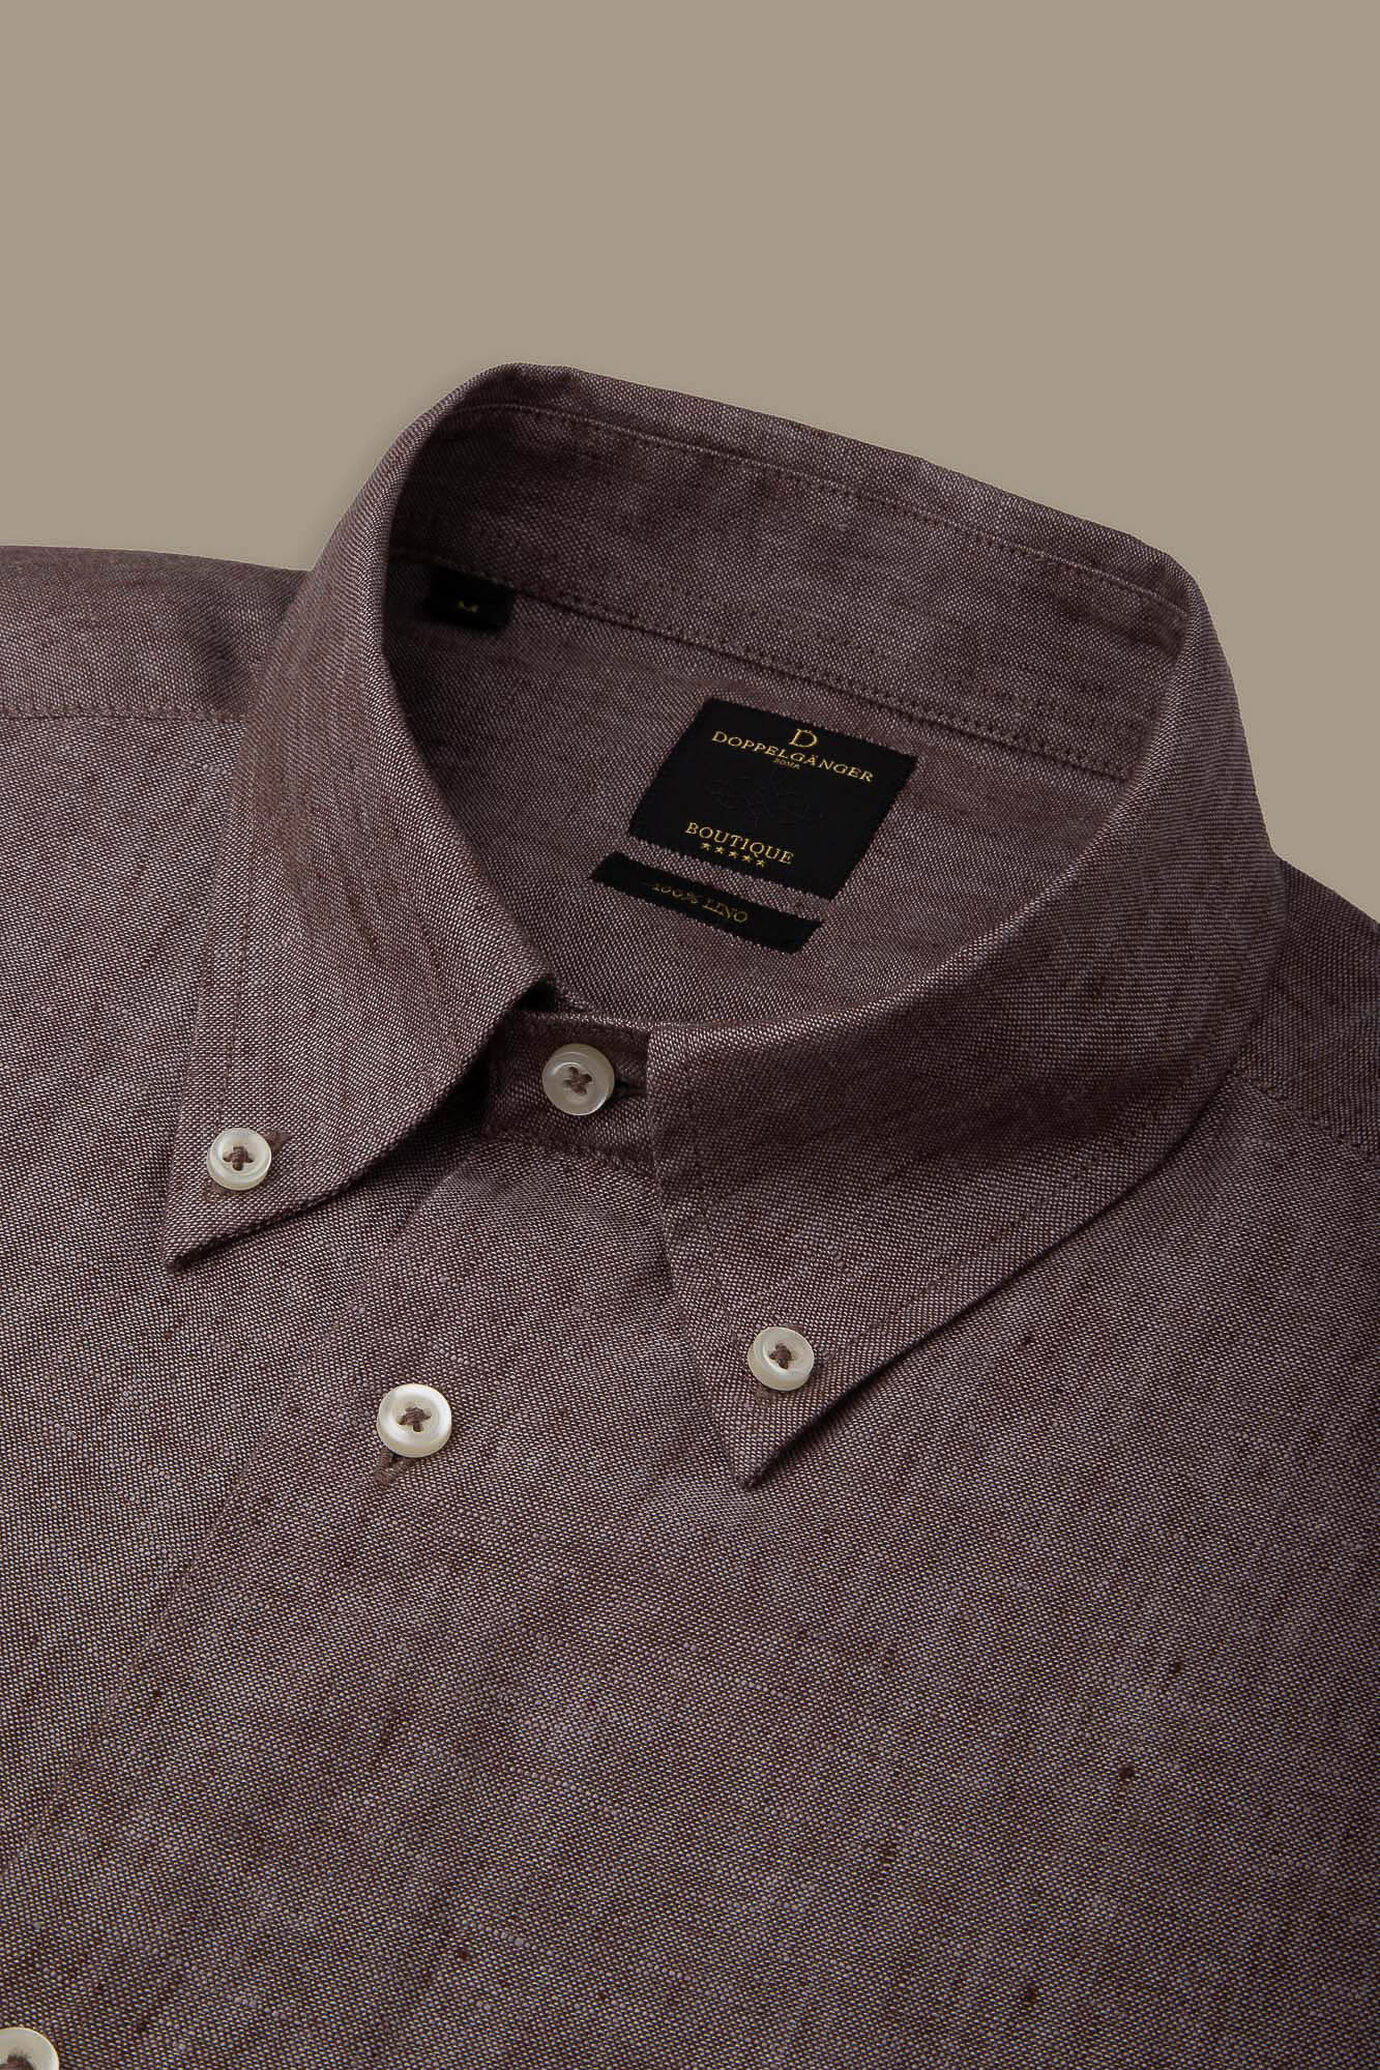 Camicia casual collo button down 100% lino uomo image number 3